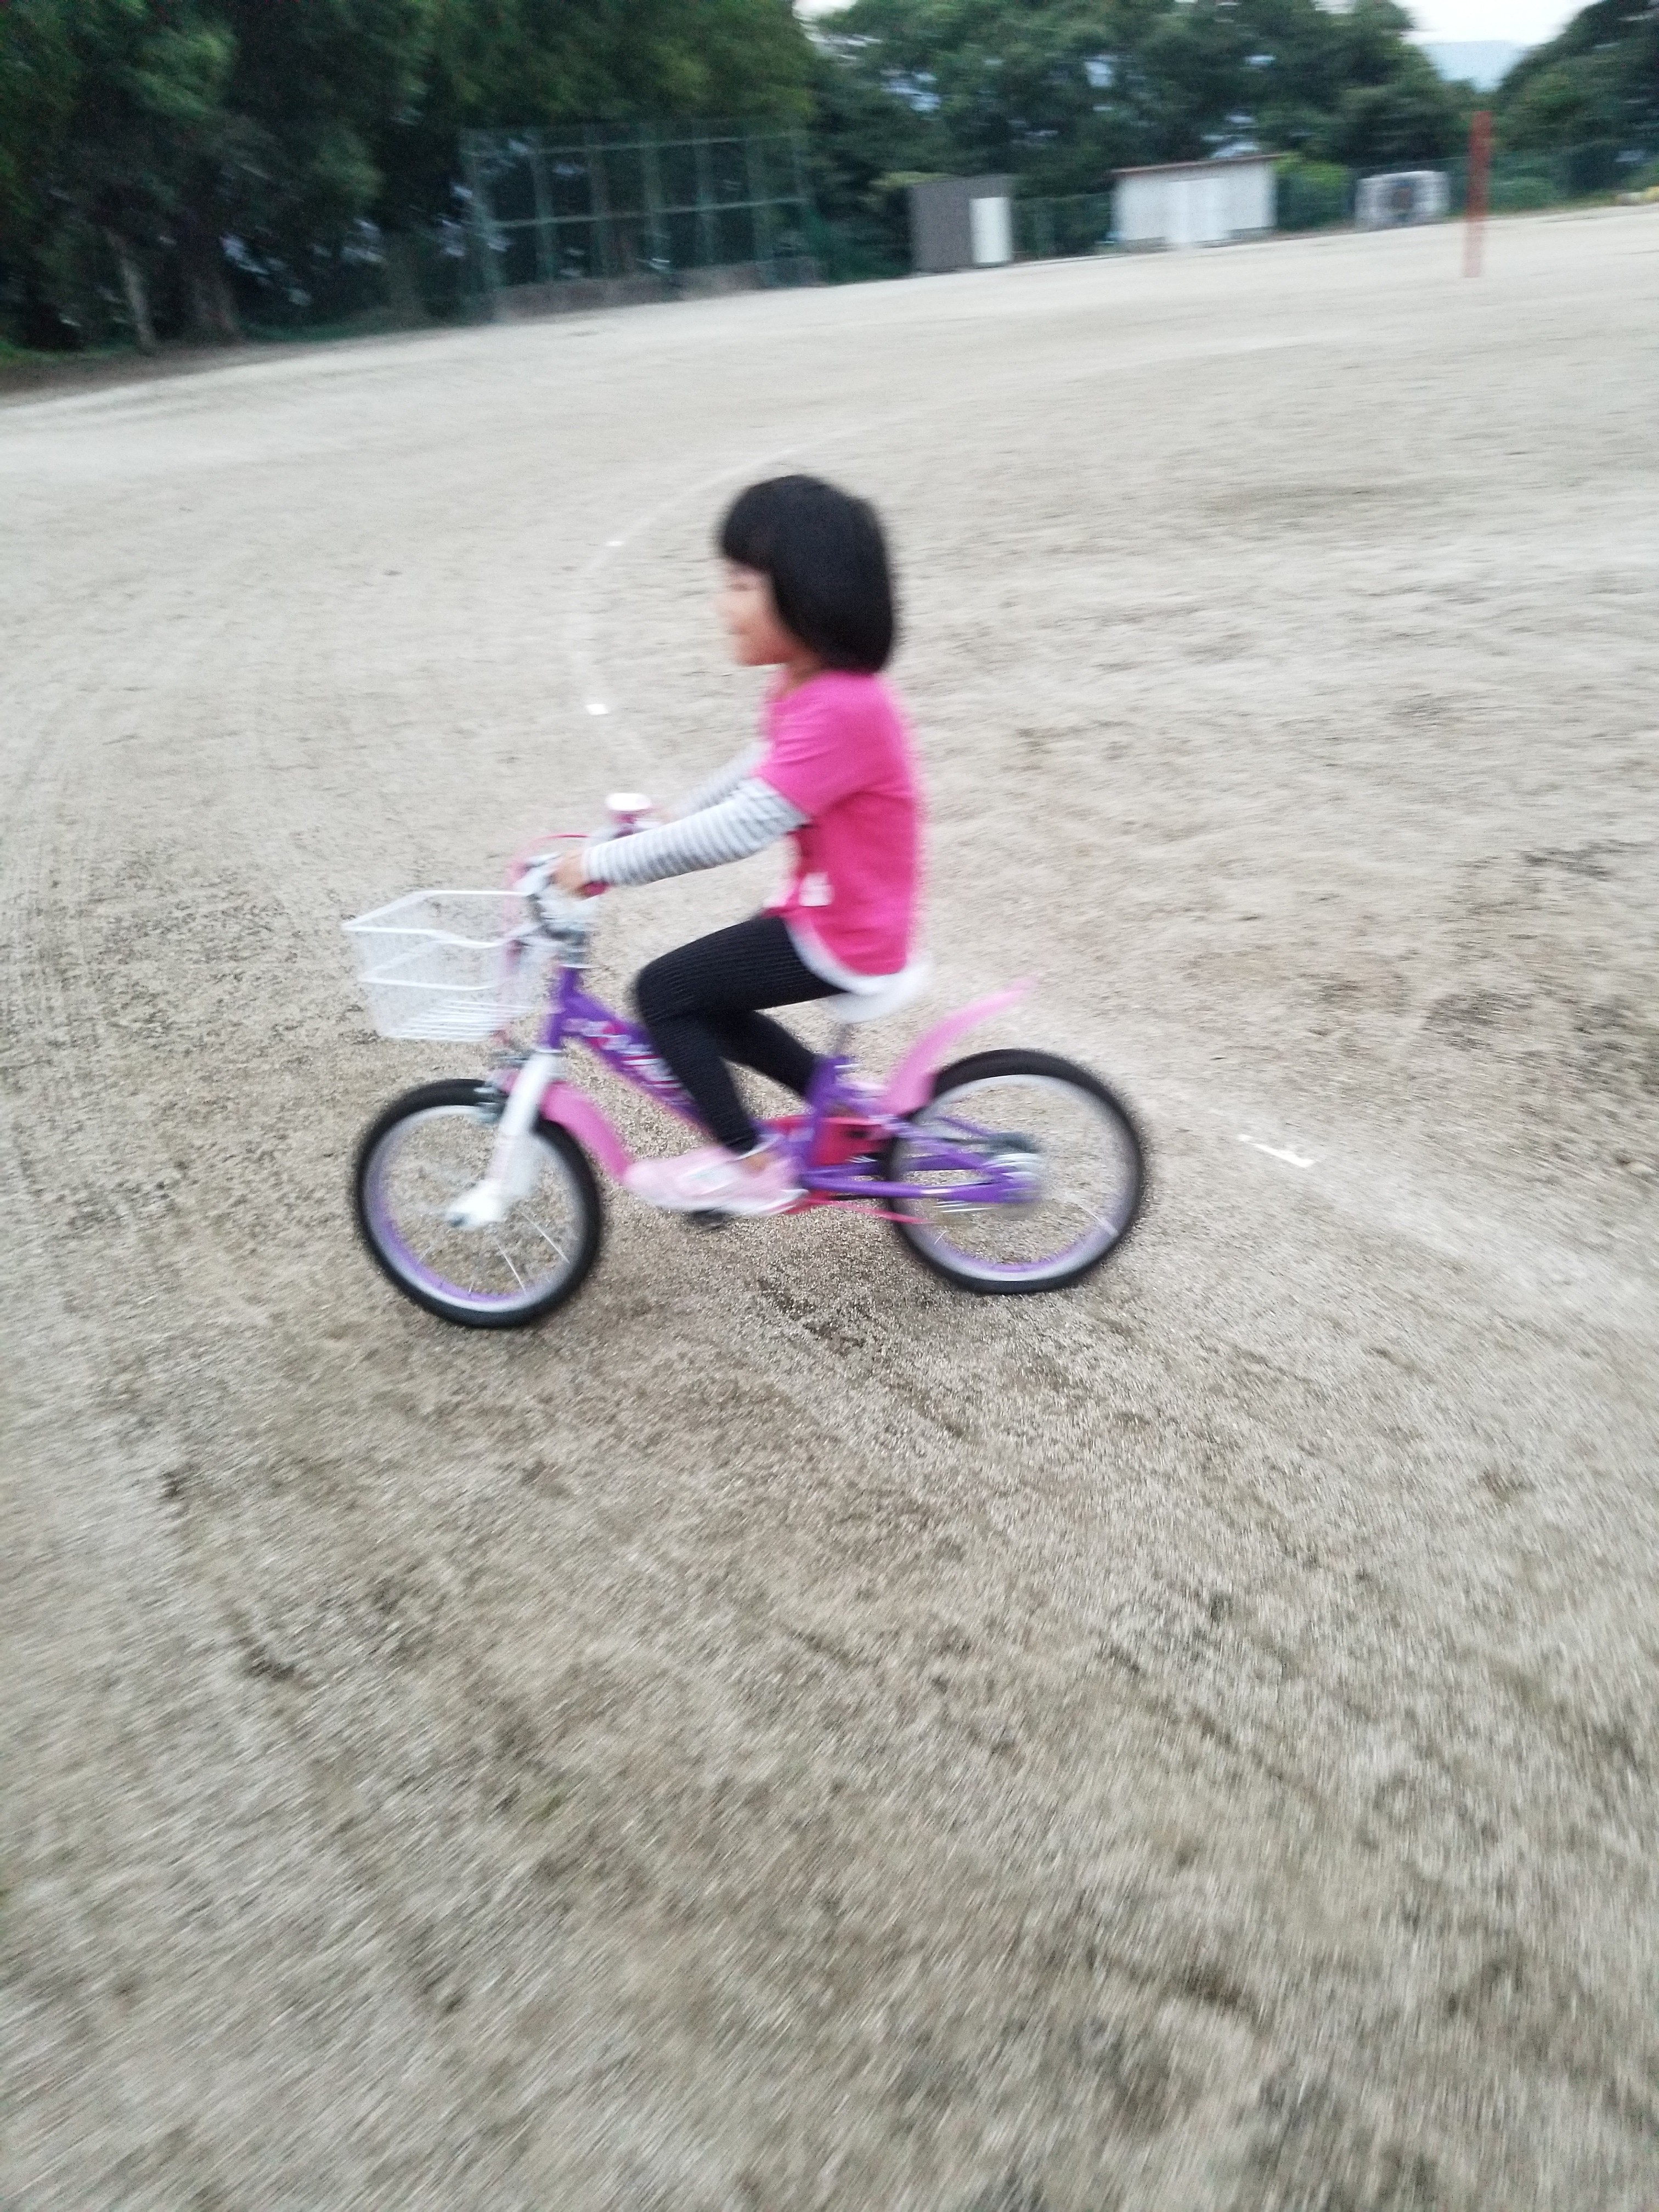 30分で5歳の子供が乗れた 補助輪なし自転車練習の秘伝 ブレインアタックな 毎日を楽しめ